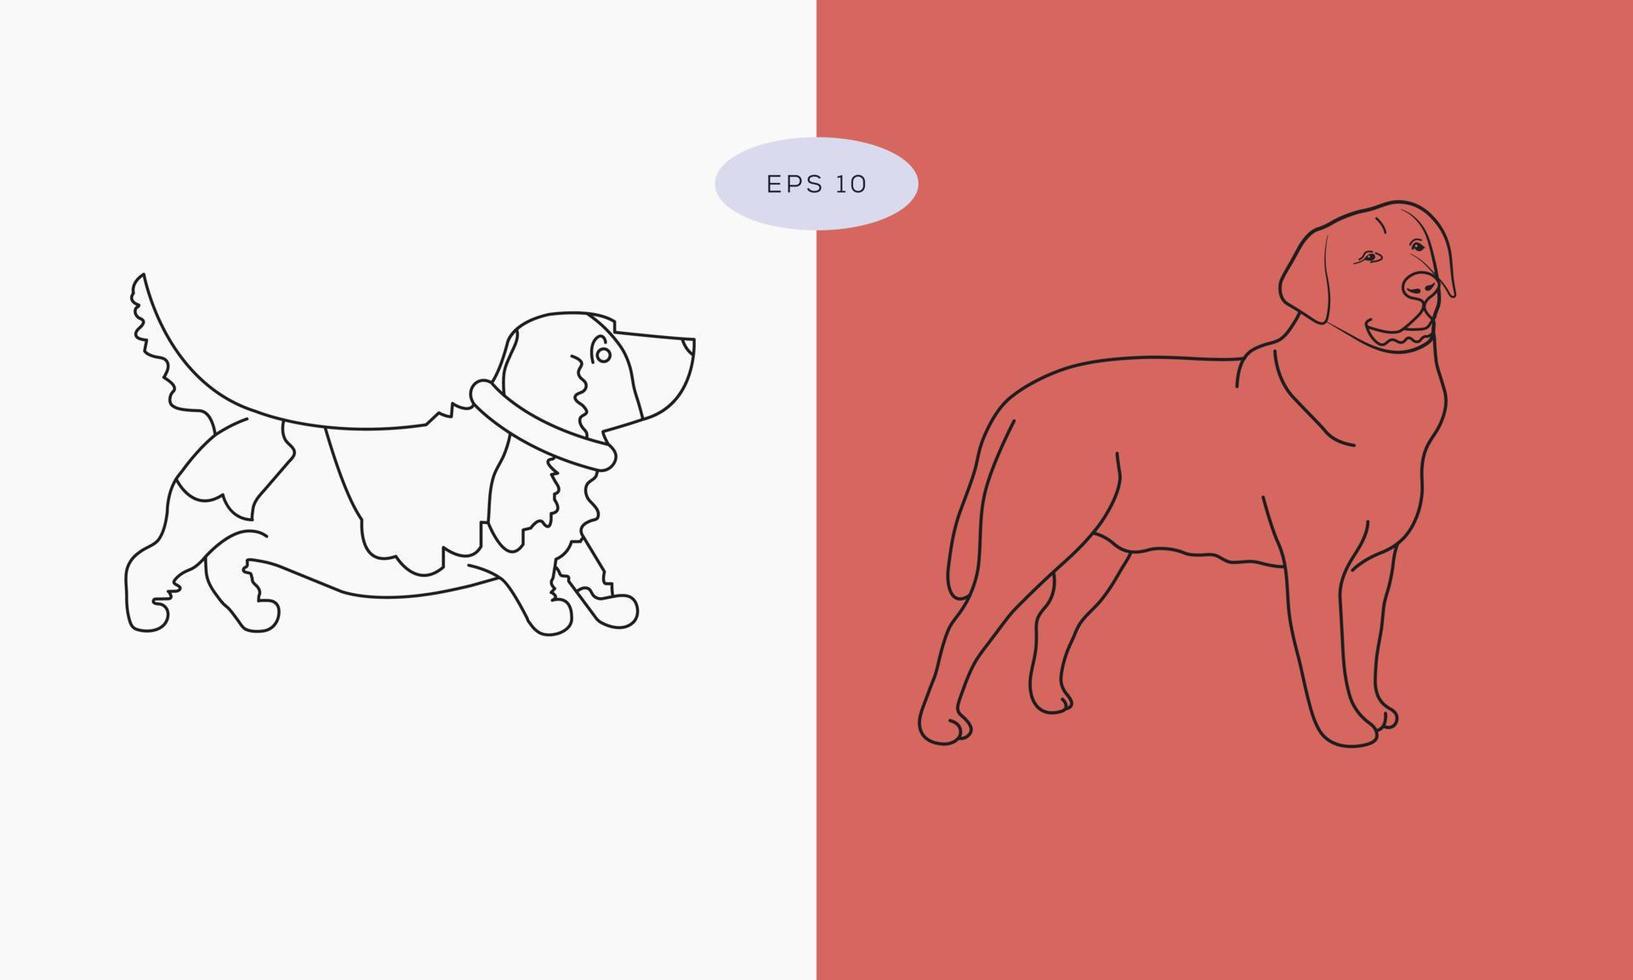 sammlung in verschiedenen posen im freihandzeichnungsvektorillustrationsstil, einzeilige zeichnung des hundes. Umrisszeichnung des Hundes. minimalistisches einzeiliges tiersymbol vektor